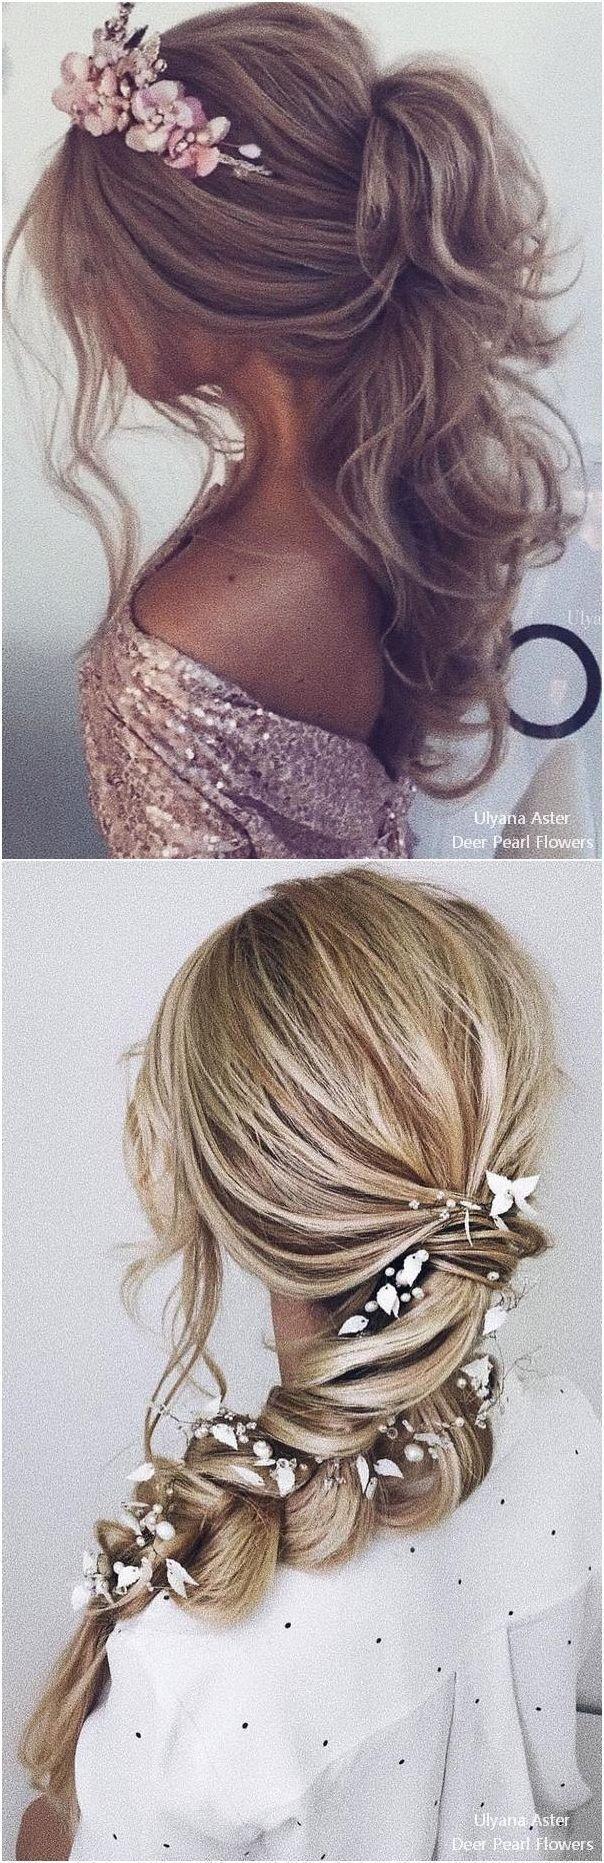 زفاف - Top 25 Ulyana Aster Wedding Hairstyles #weddings #weddinghairstyles #dpf #deerpearlflowers #hairstyles 